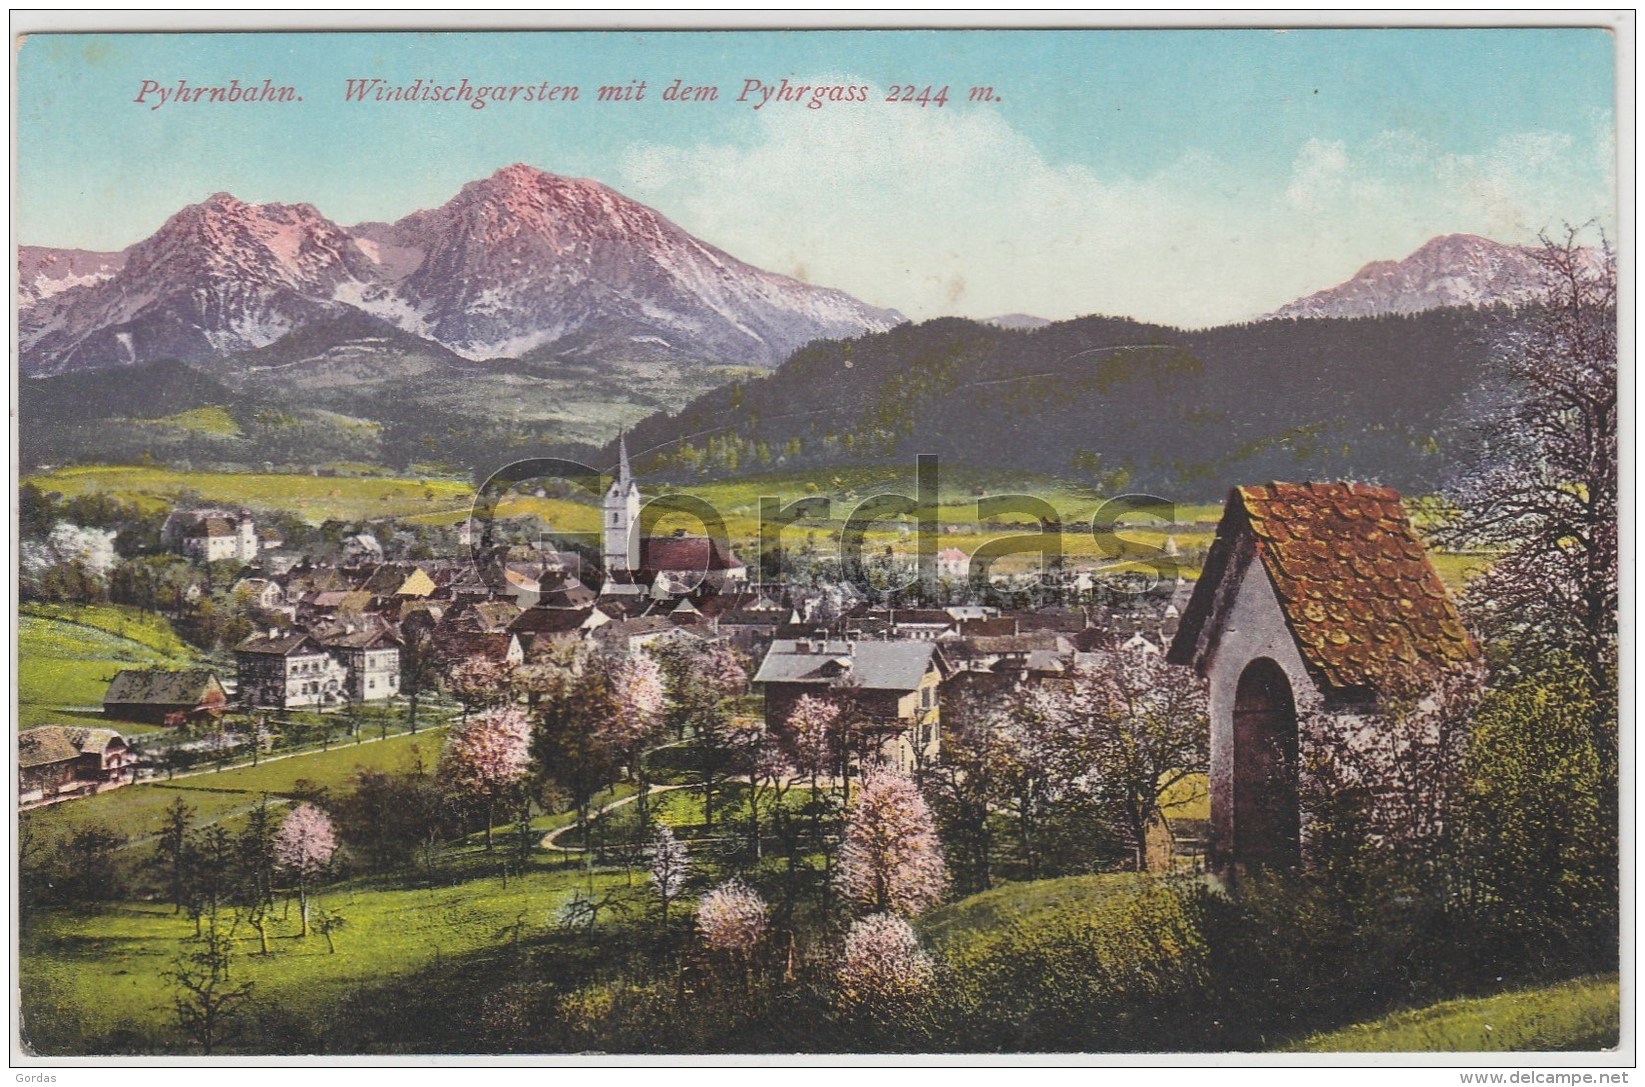 Austria - Windischgarden - Windischgarsten